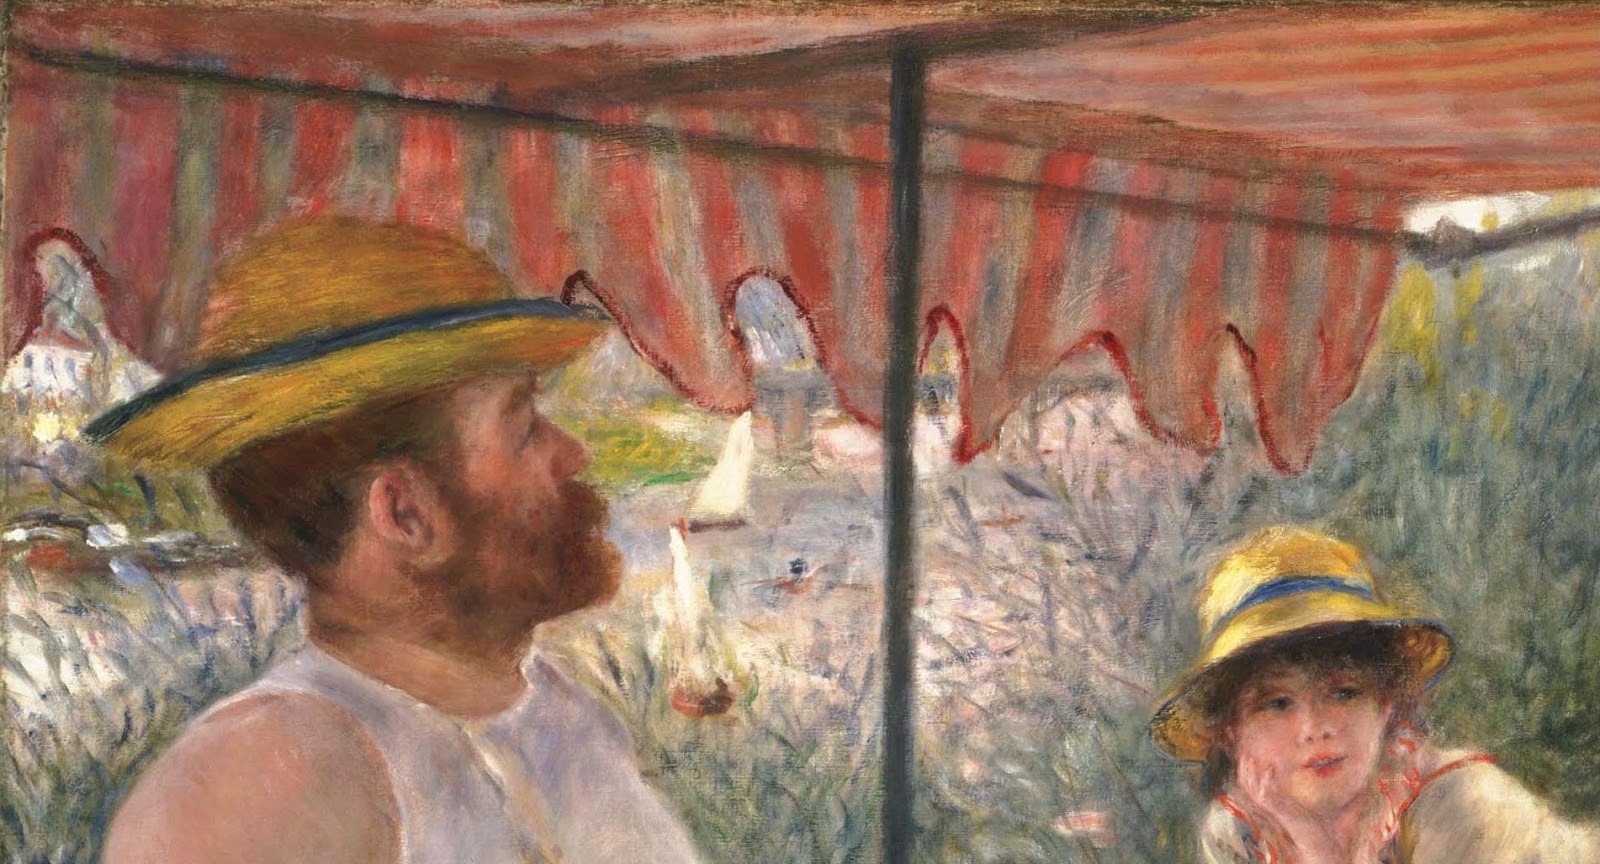 Pierre+Auguste+Renoir-1841-1-19 (566).JPG